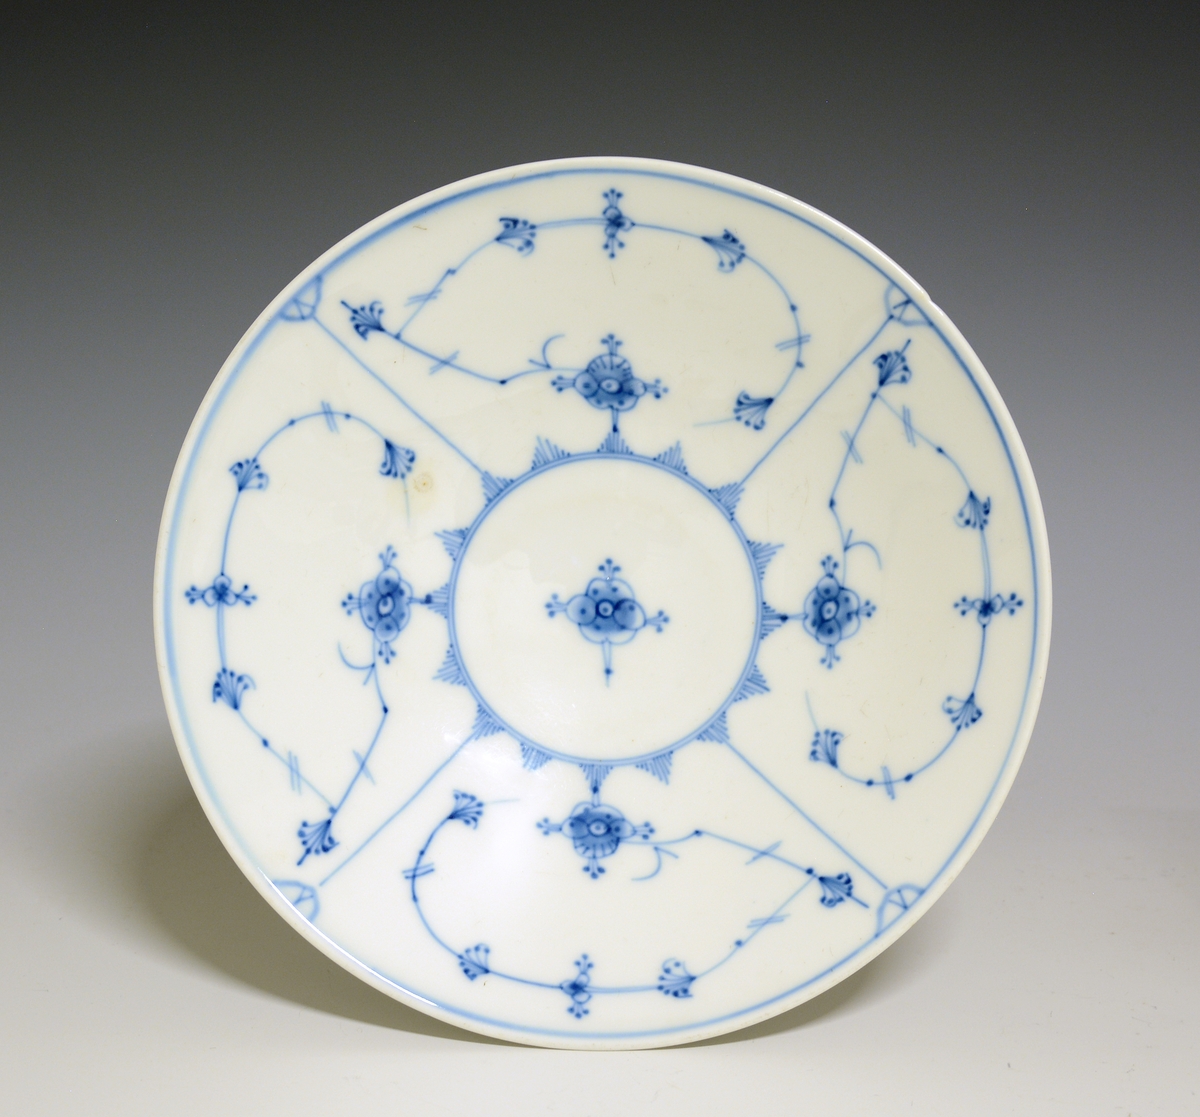 Stettfat av porselen med hvit glasur. Dekorert med stråmønster i blått.

Modellnr: 15.2
Finnes i priskuranten for 1909